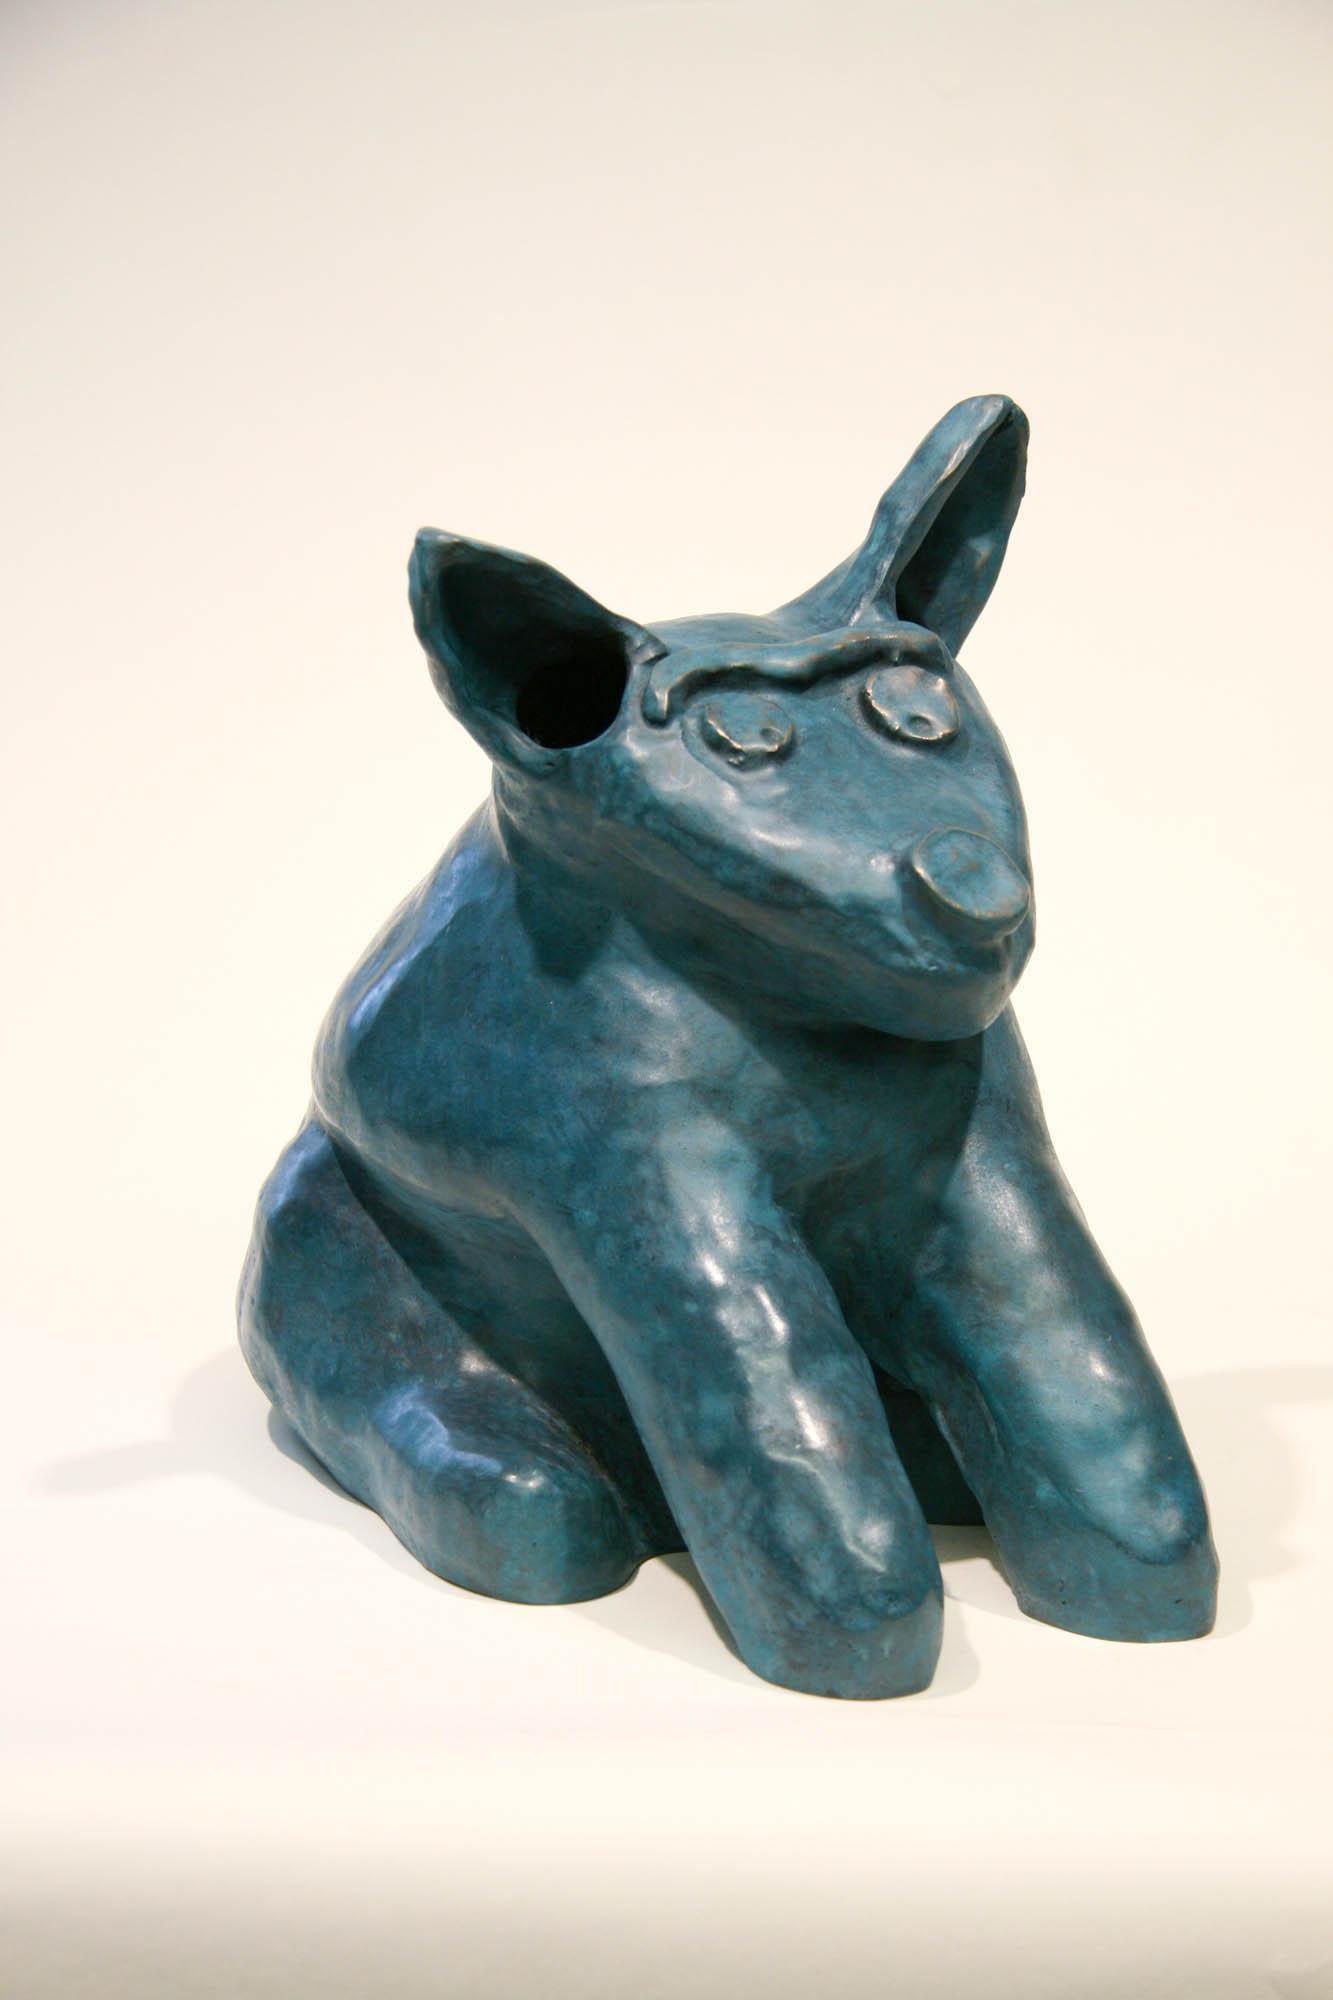 Marvin Tso Likes Green Chile Käseburger, Bronzeskulptur eines Hundes, Teal, sitzend – Sculpture von Melanie Yazzie